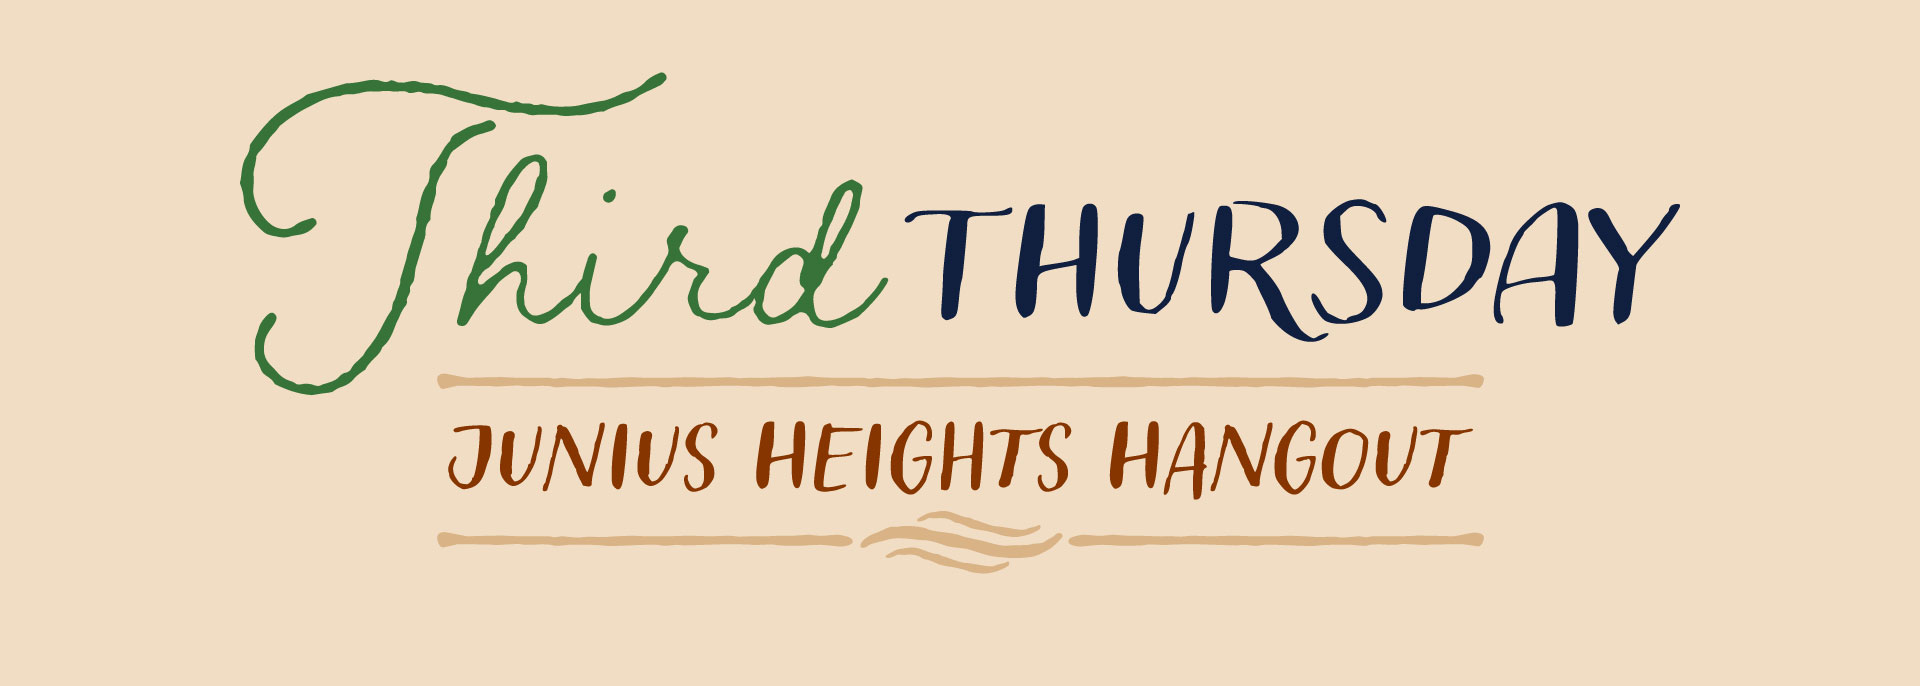 Third Thursday Junius Heights Hangout